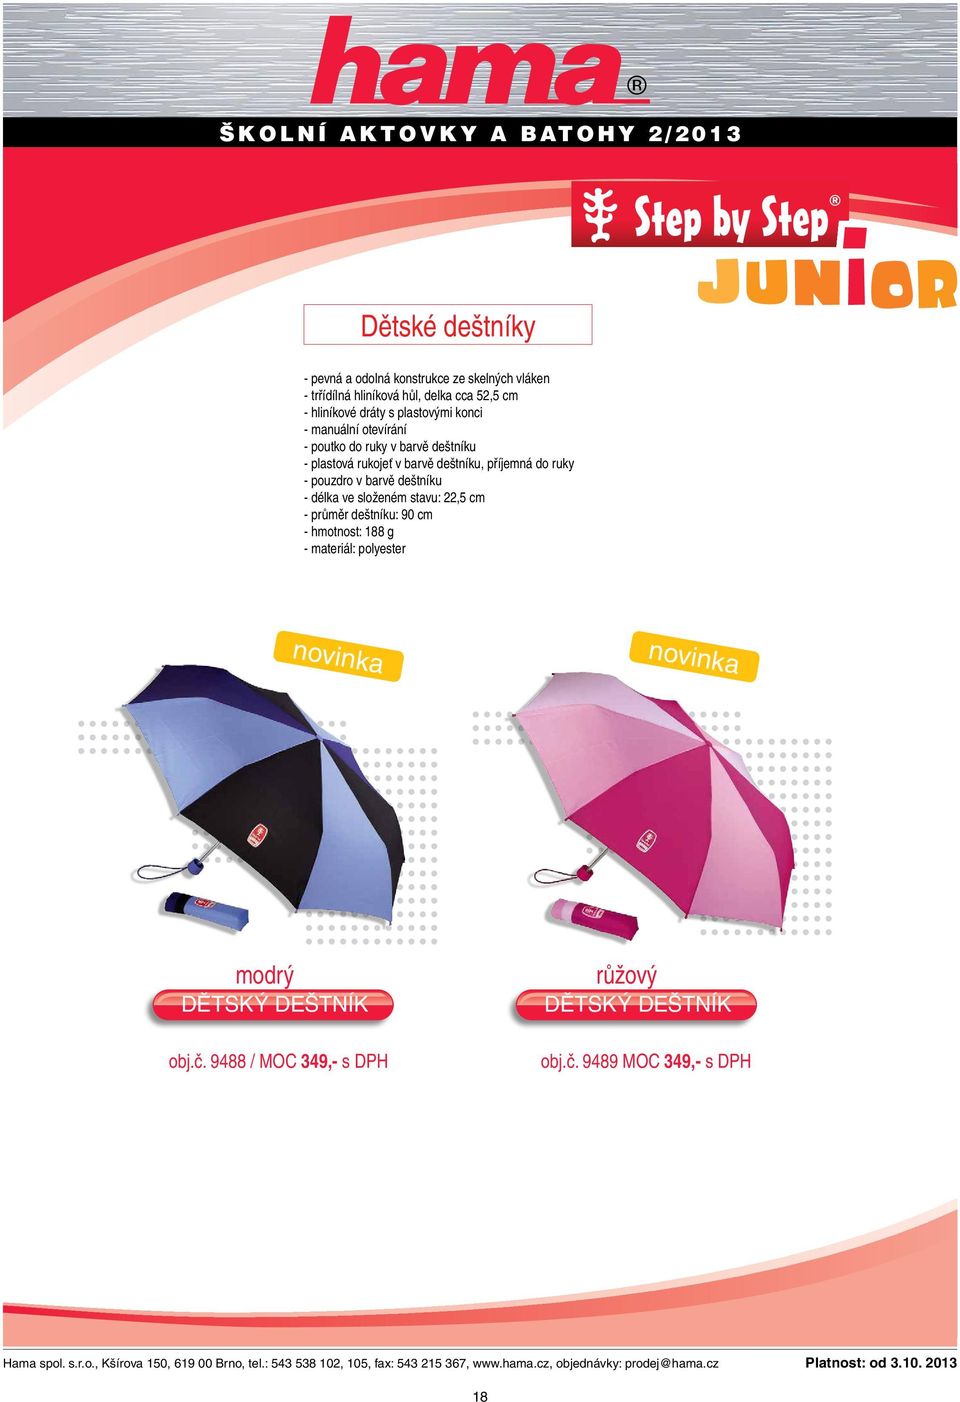 příjemná do ruky - pouzdro v barvě deštníku - délka ve složeném stavu: 22,5 cm - průměr deštníku: 90 cm - hmotnost: 188 g -